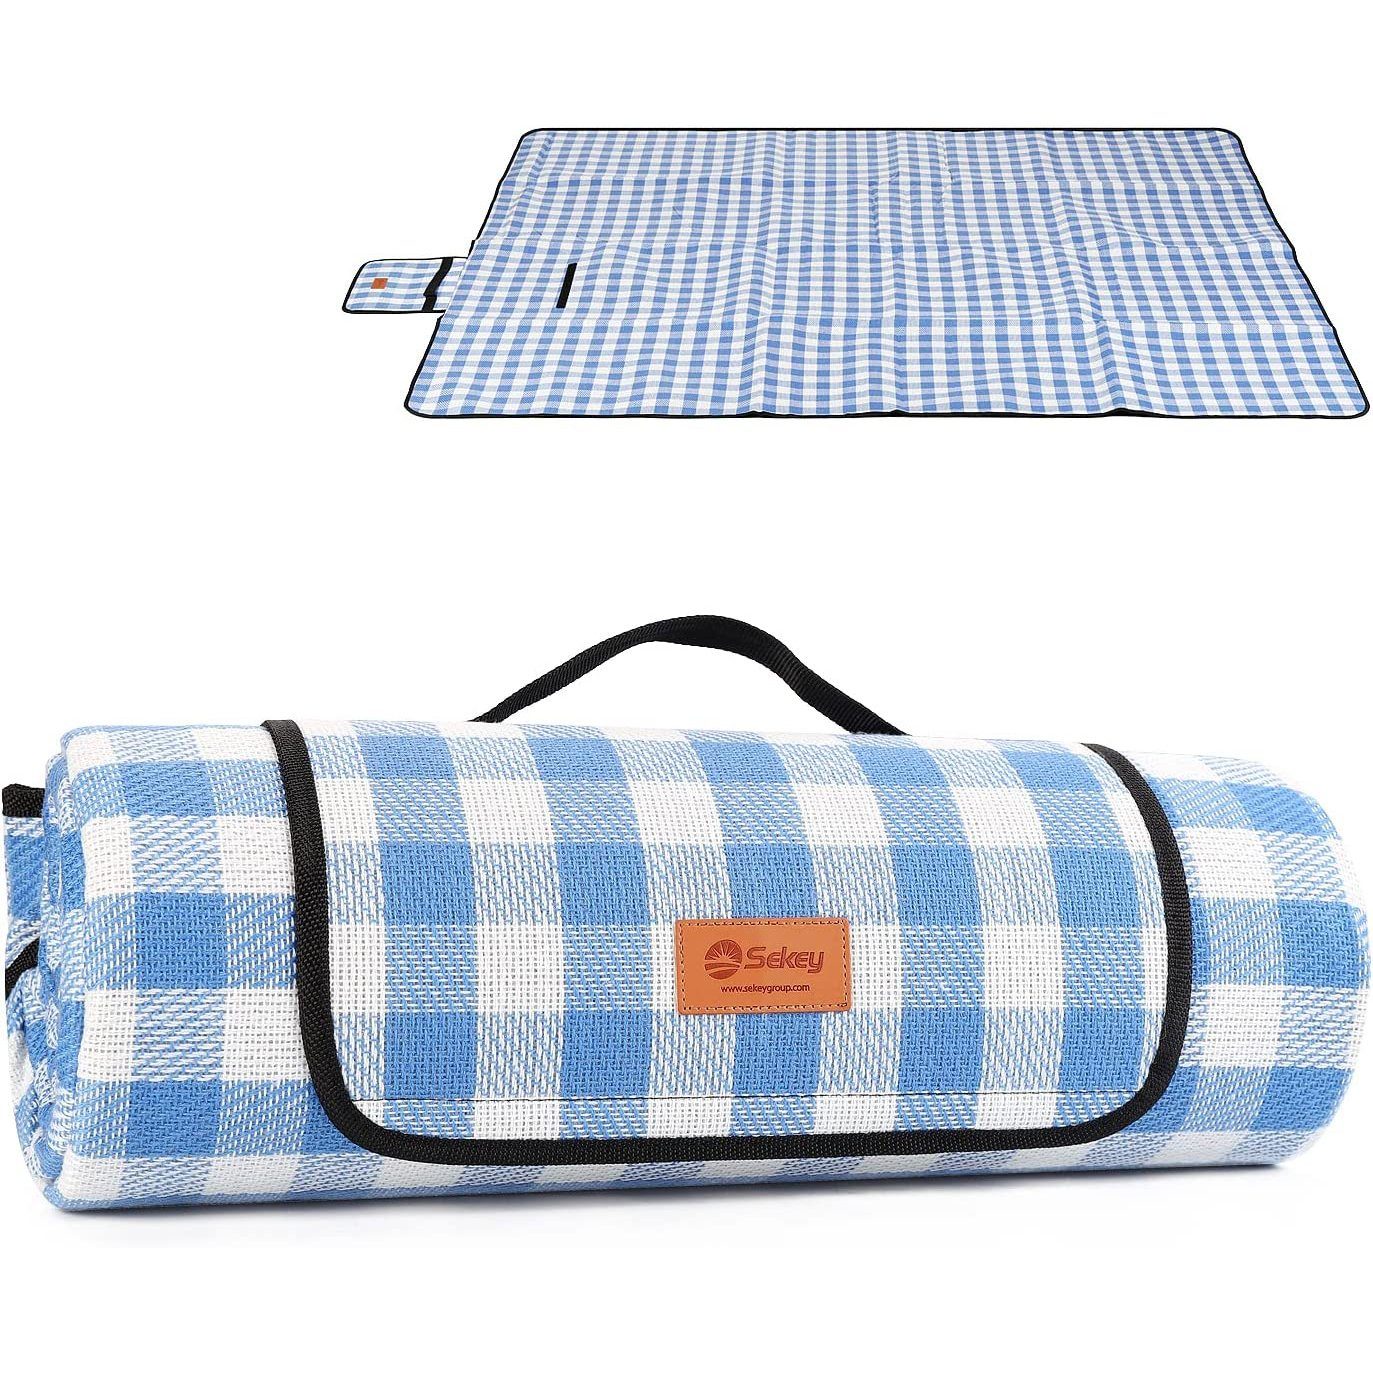 Picknickdecke XXL Picknickdecke 200x170 cm Wasserdicht Camping Decke aus  DREI Lagen, Sekey, Wärmeisoliert Stranddecke Sandabweisend Waschbar